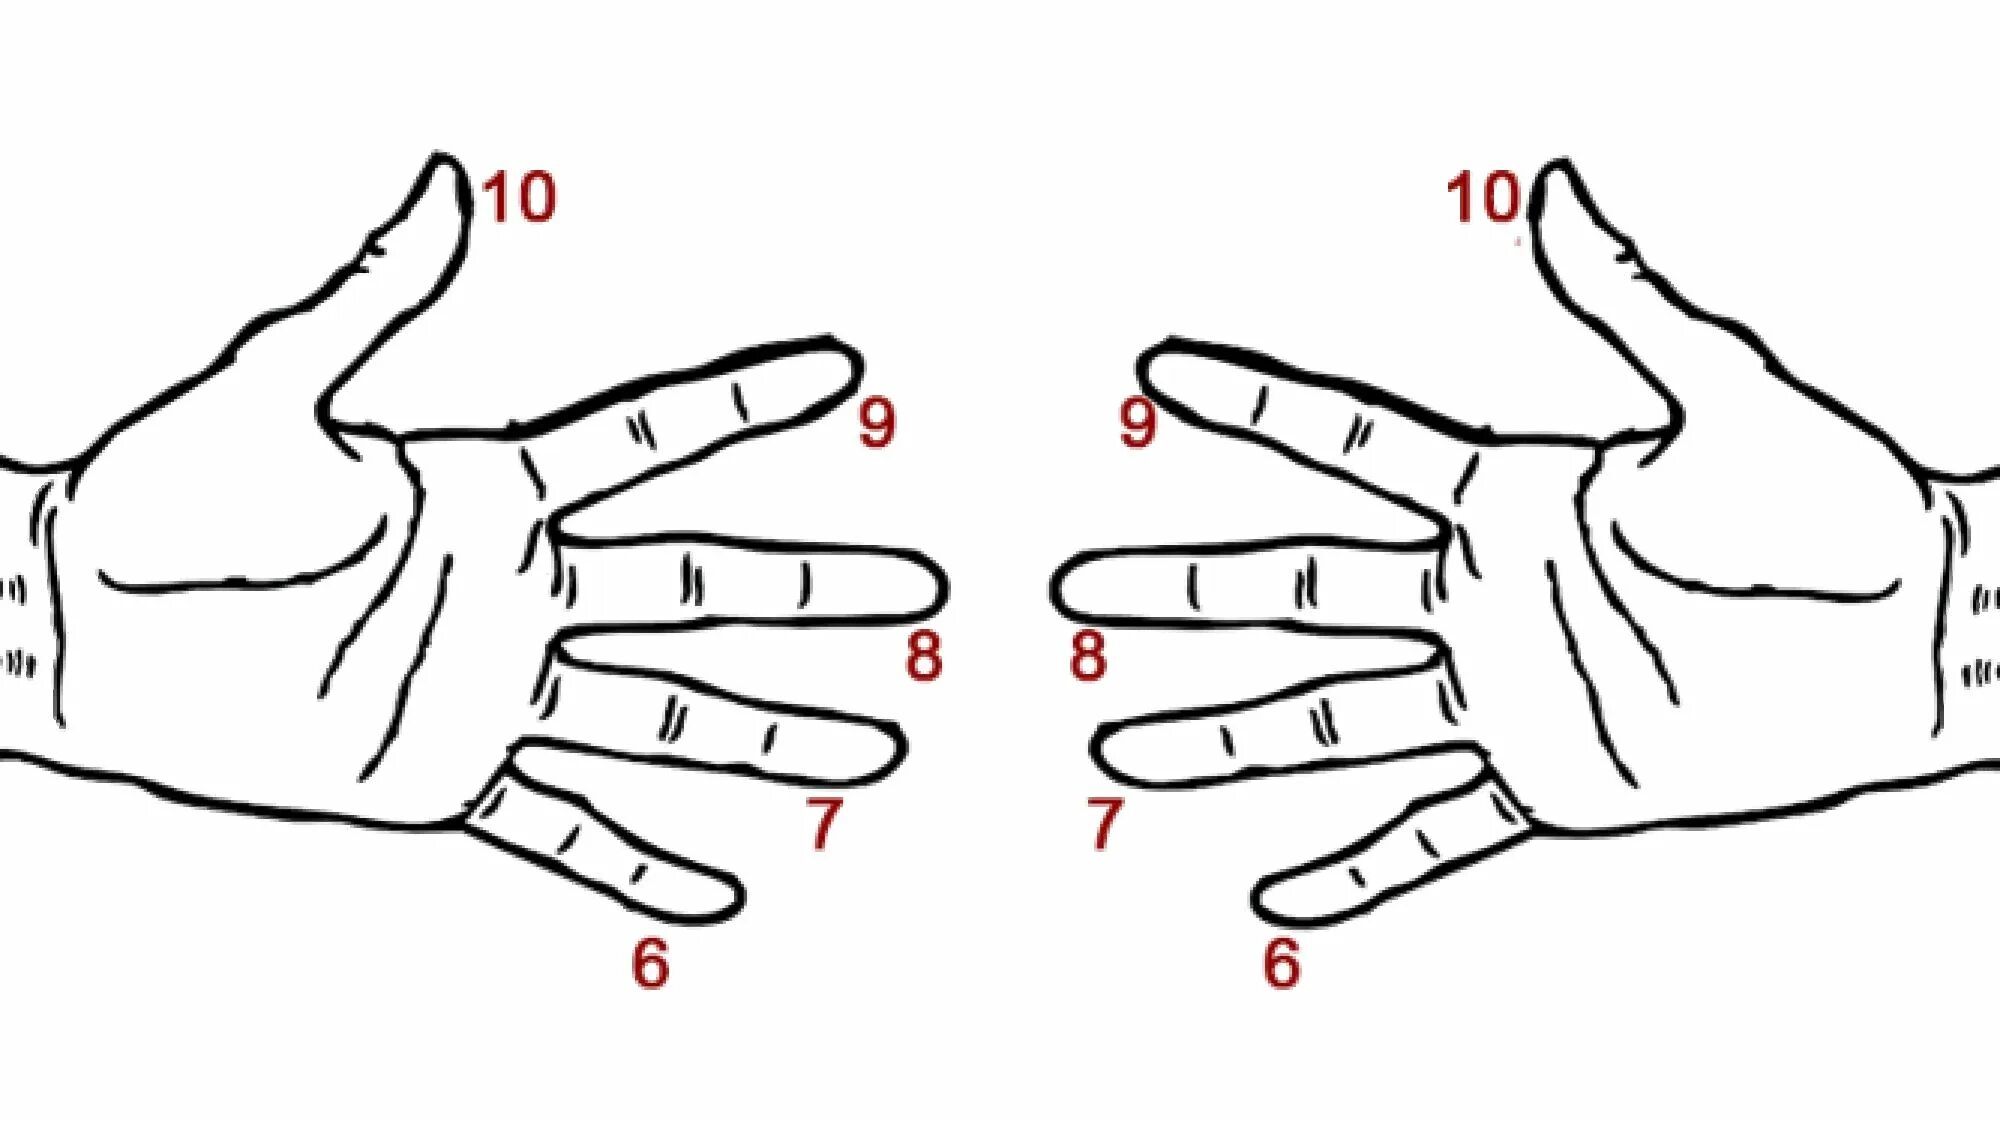 Таблица умножения на пальцах на 6.7.8.9. Древнерусский способ умножения на пальцах. Таблица умножения на пальцах. Умножение на пальцах рук. Ввести пальчики